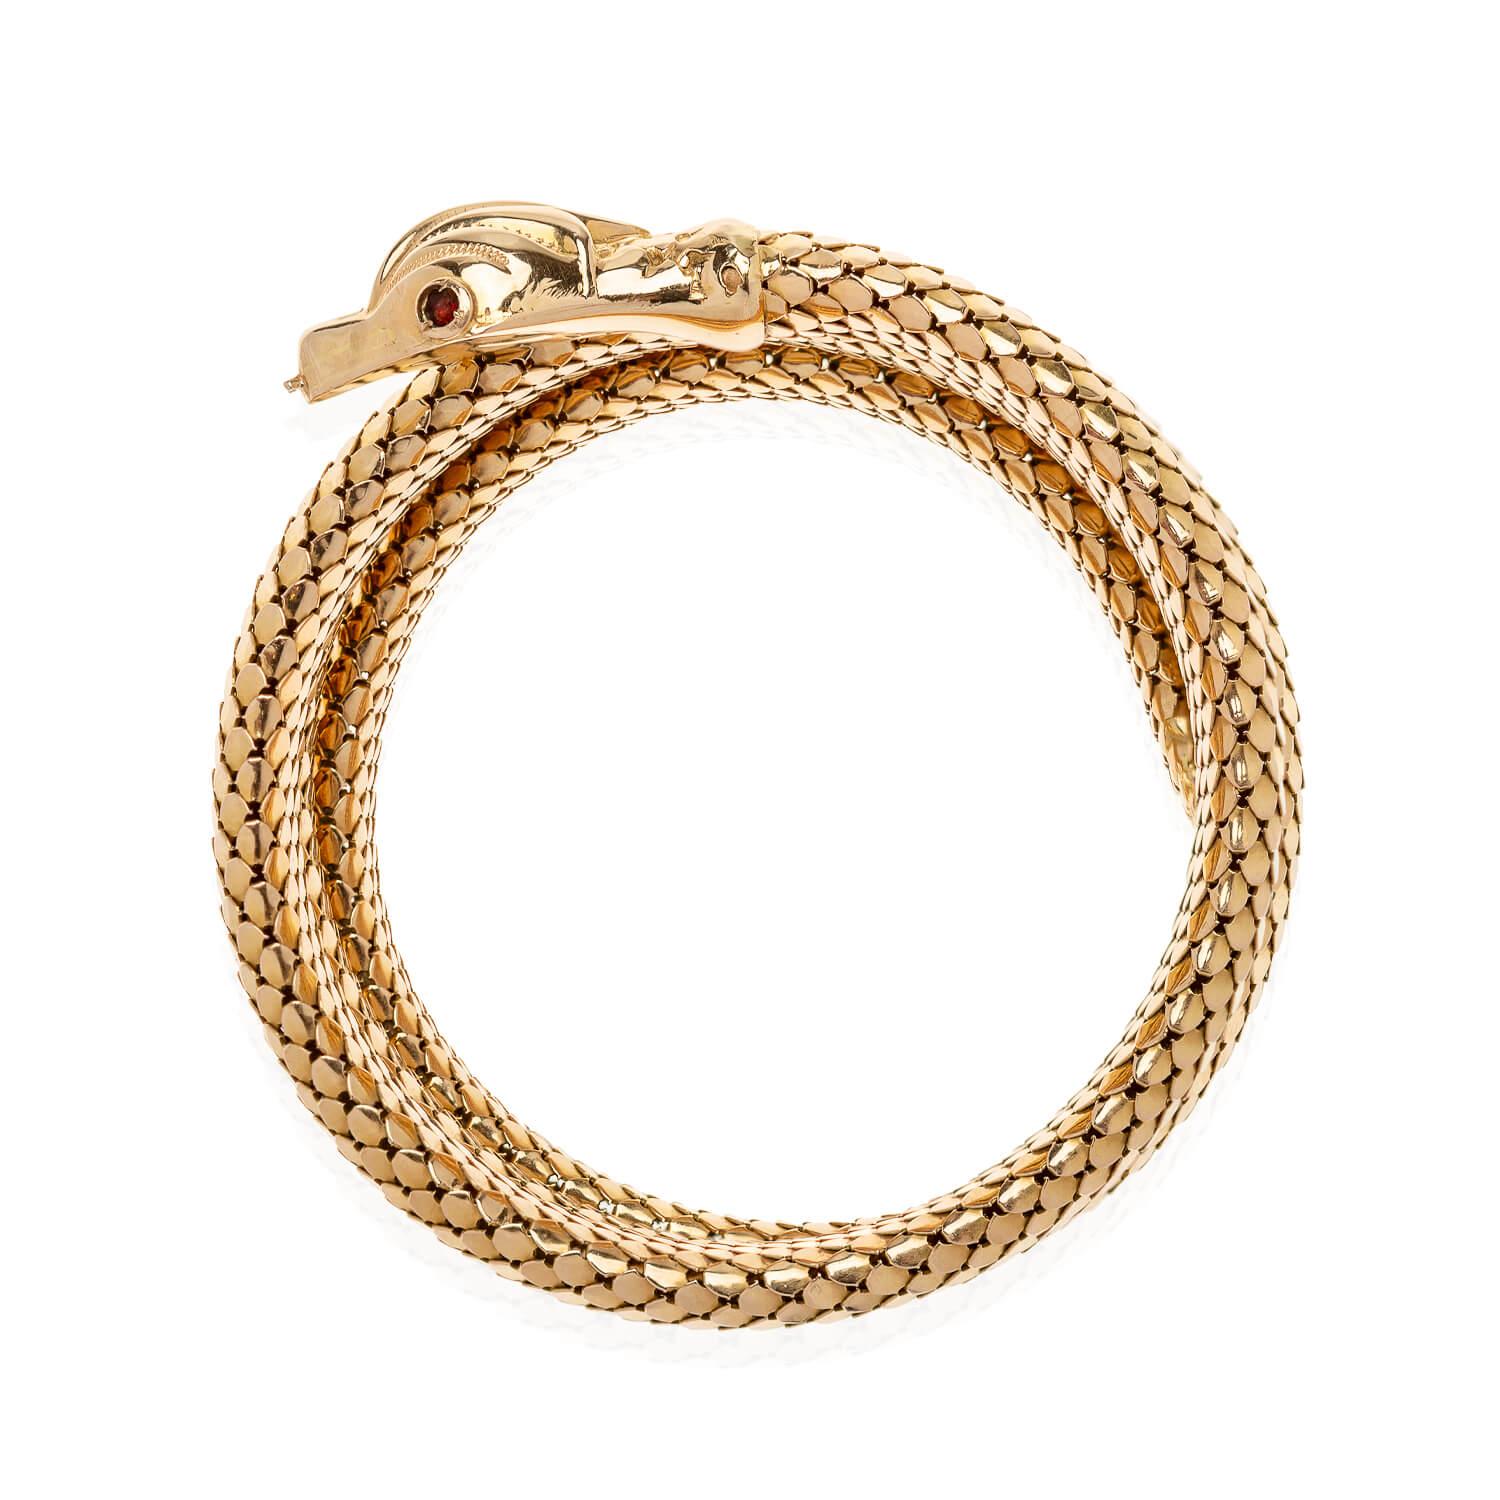 Ein wunderschönes Armband aus der Retro-Ära (ca. 1940er Jahre)! Dieses wunderschöne Armband aus 18 Karat Gelbgold ist in Form einer Schlange gefertigt. Glänzende goldene Schuppen bilden den flexiblen Körper der Schlange, die sich zu viert um das